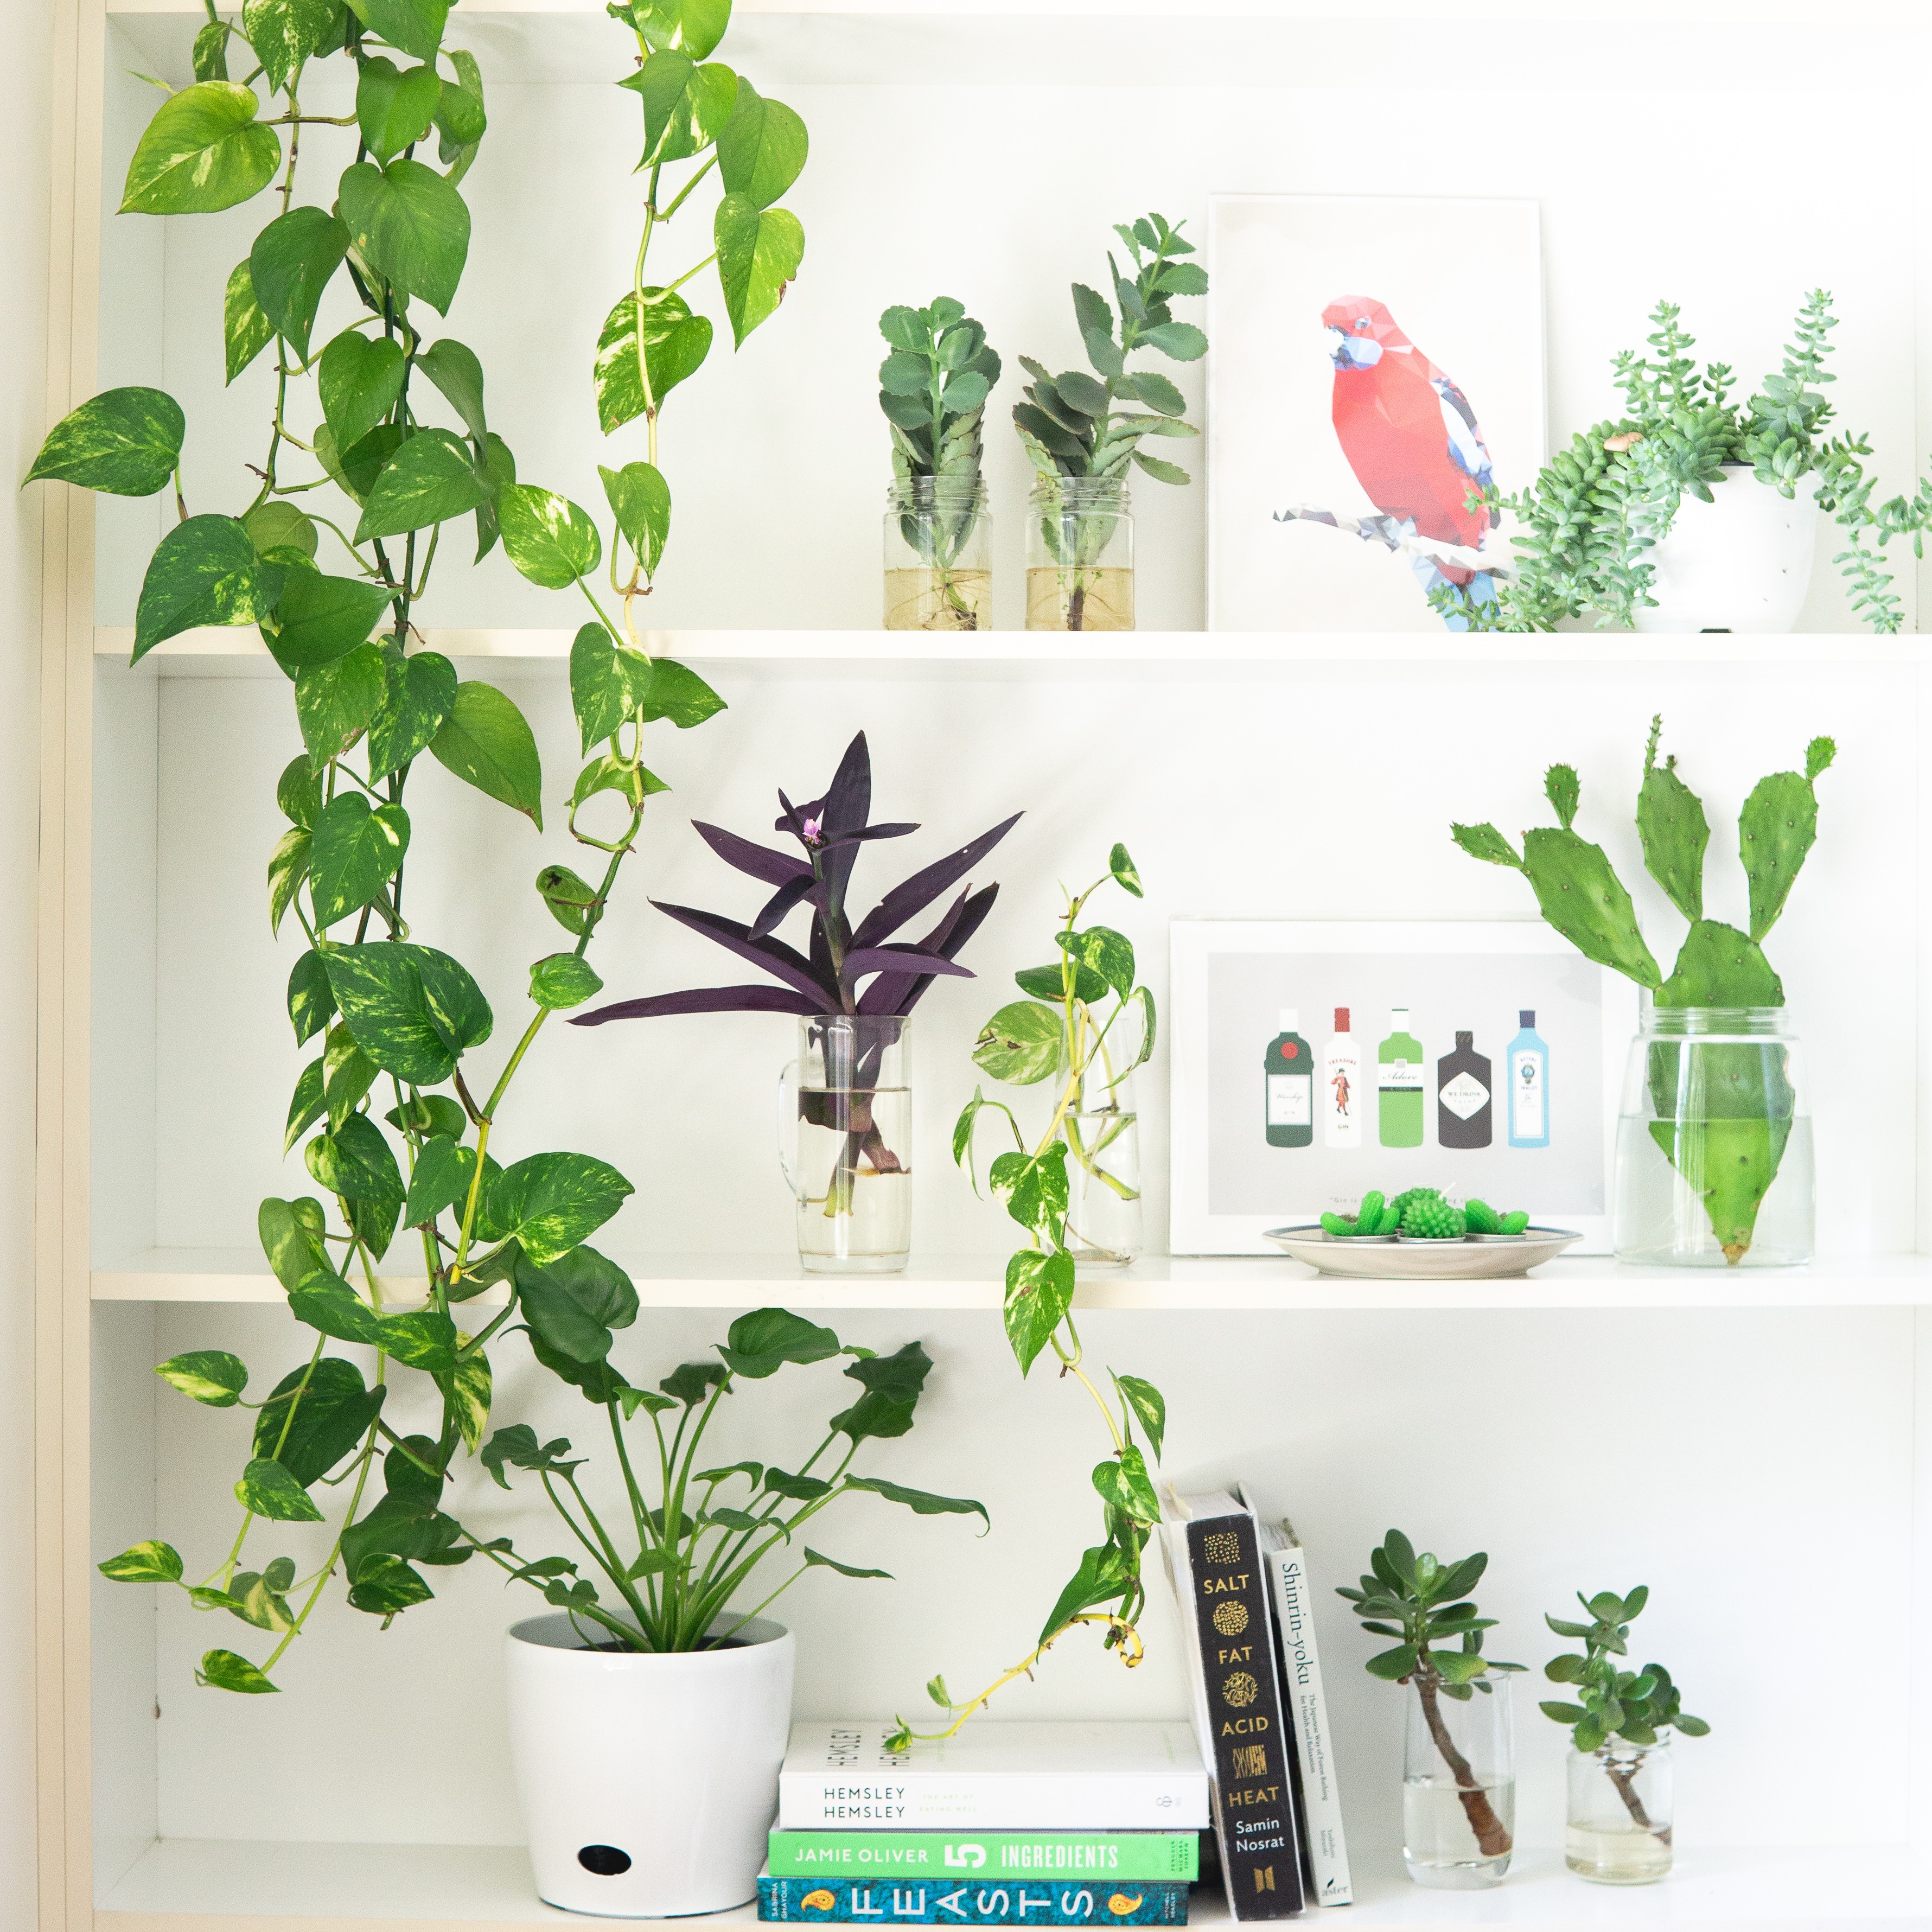 Zimmerpflanzen können vielseitig genutzt werden!